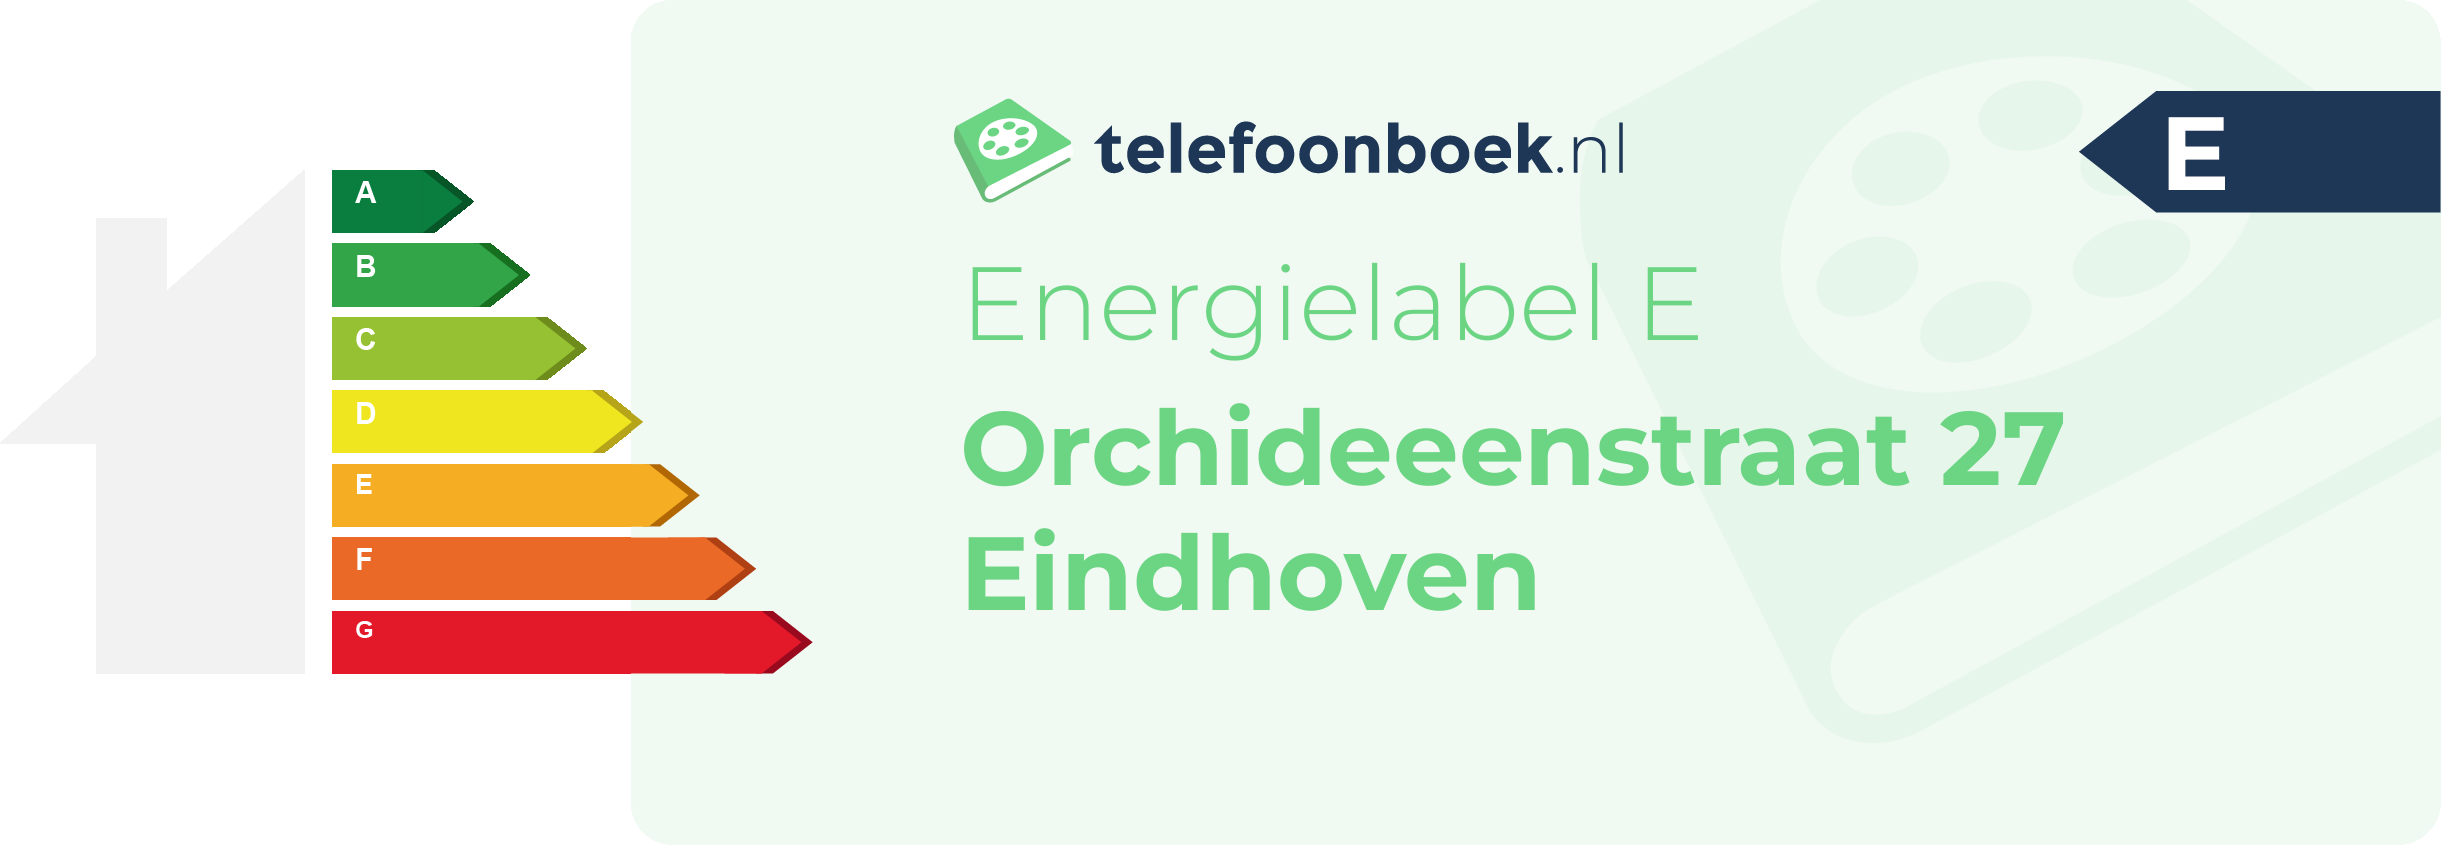 Energielabel Orchideeenstraat 27 Eindhoven